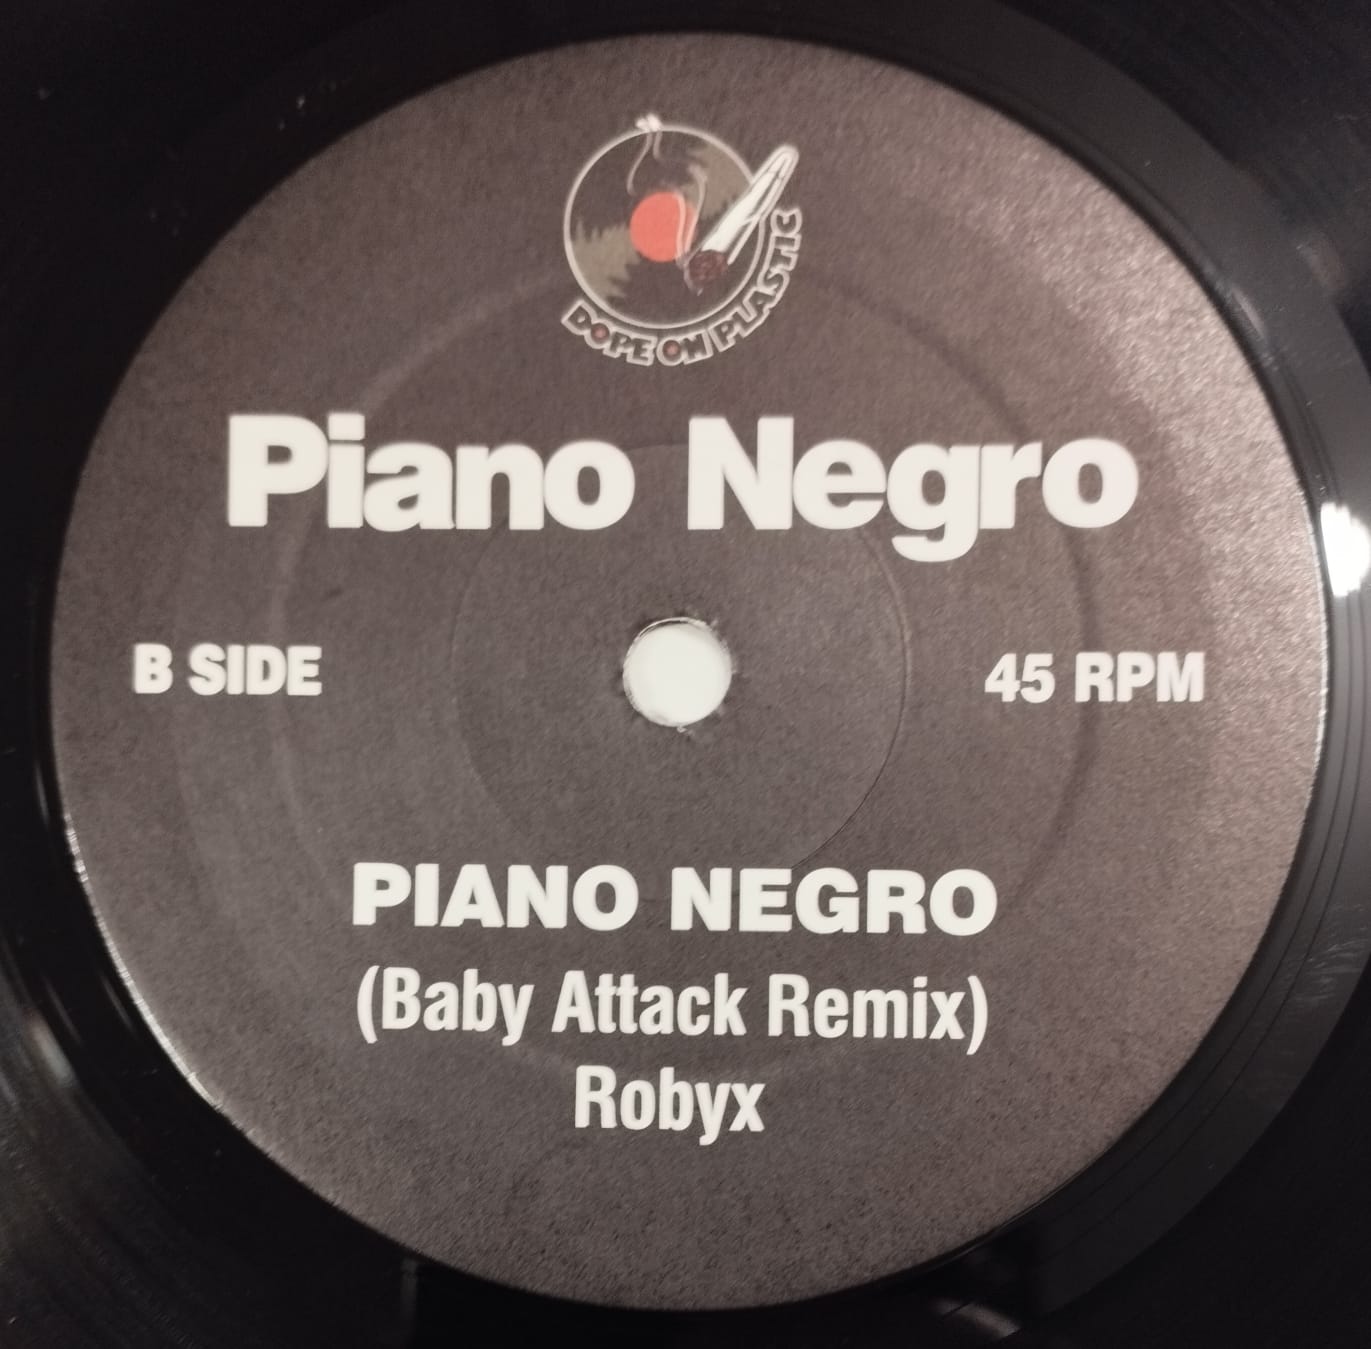 Double You / Pianonegro ‎– She's Beautiful / Piano Negro (Compacto)